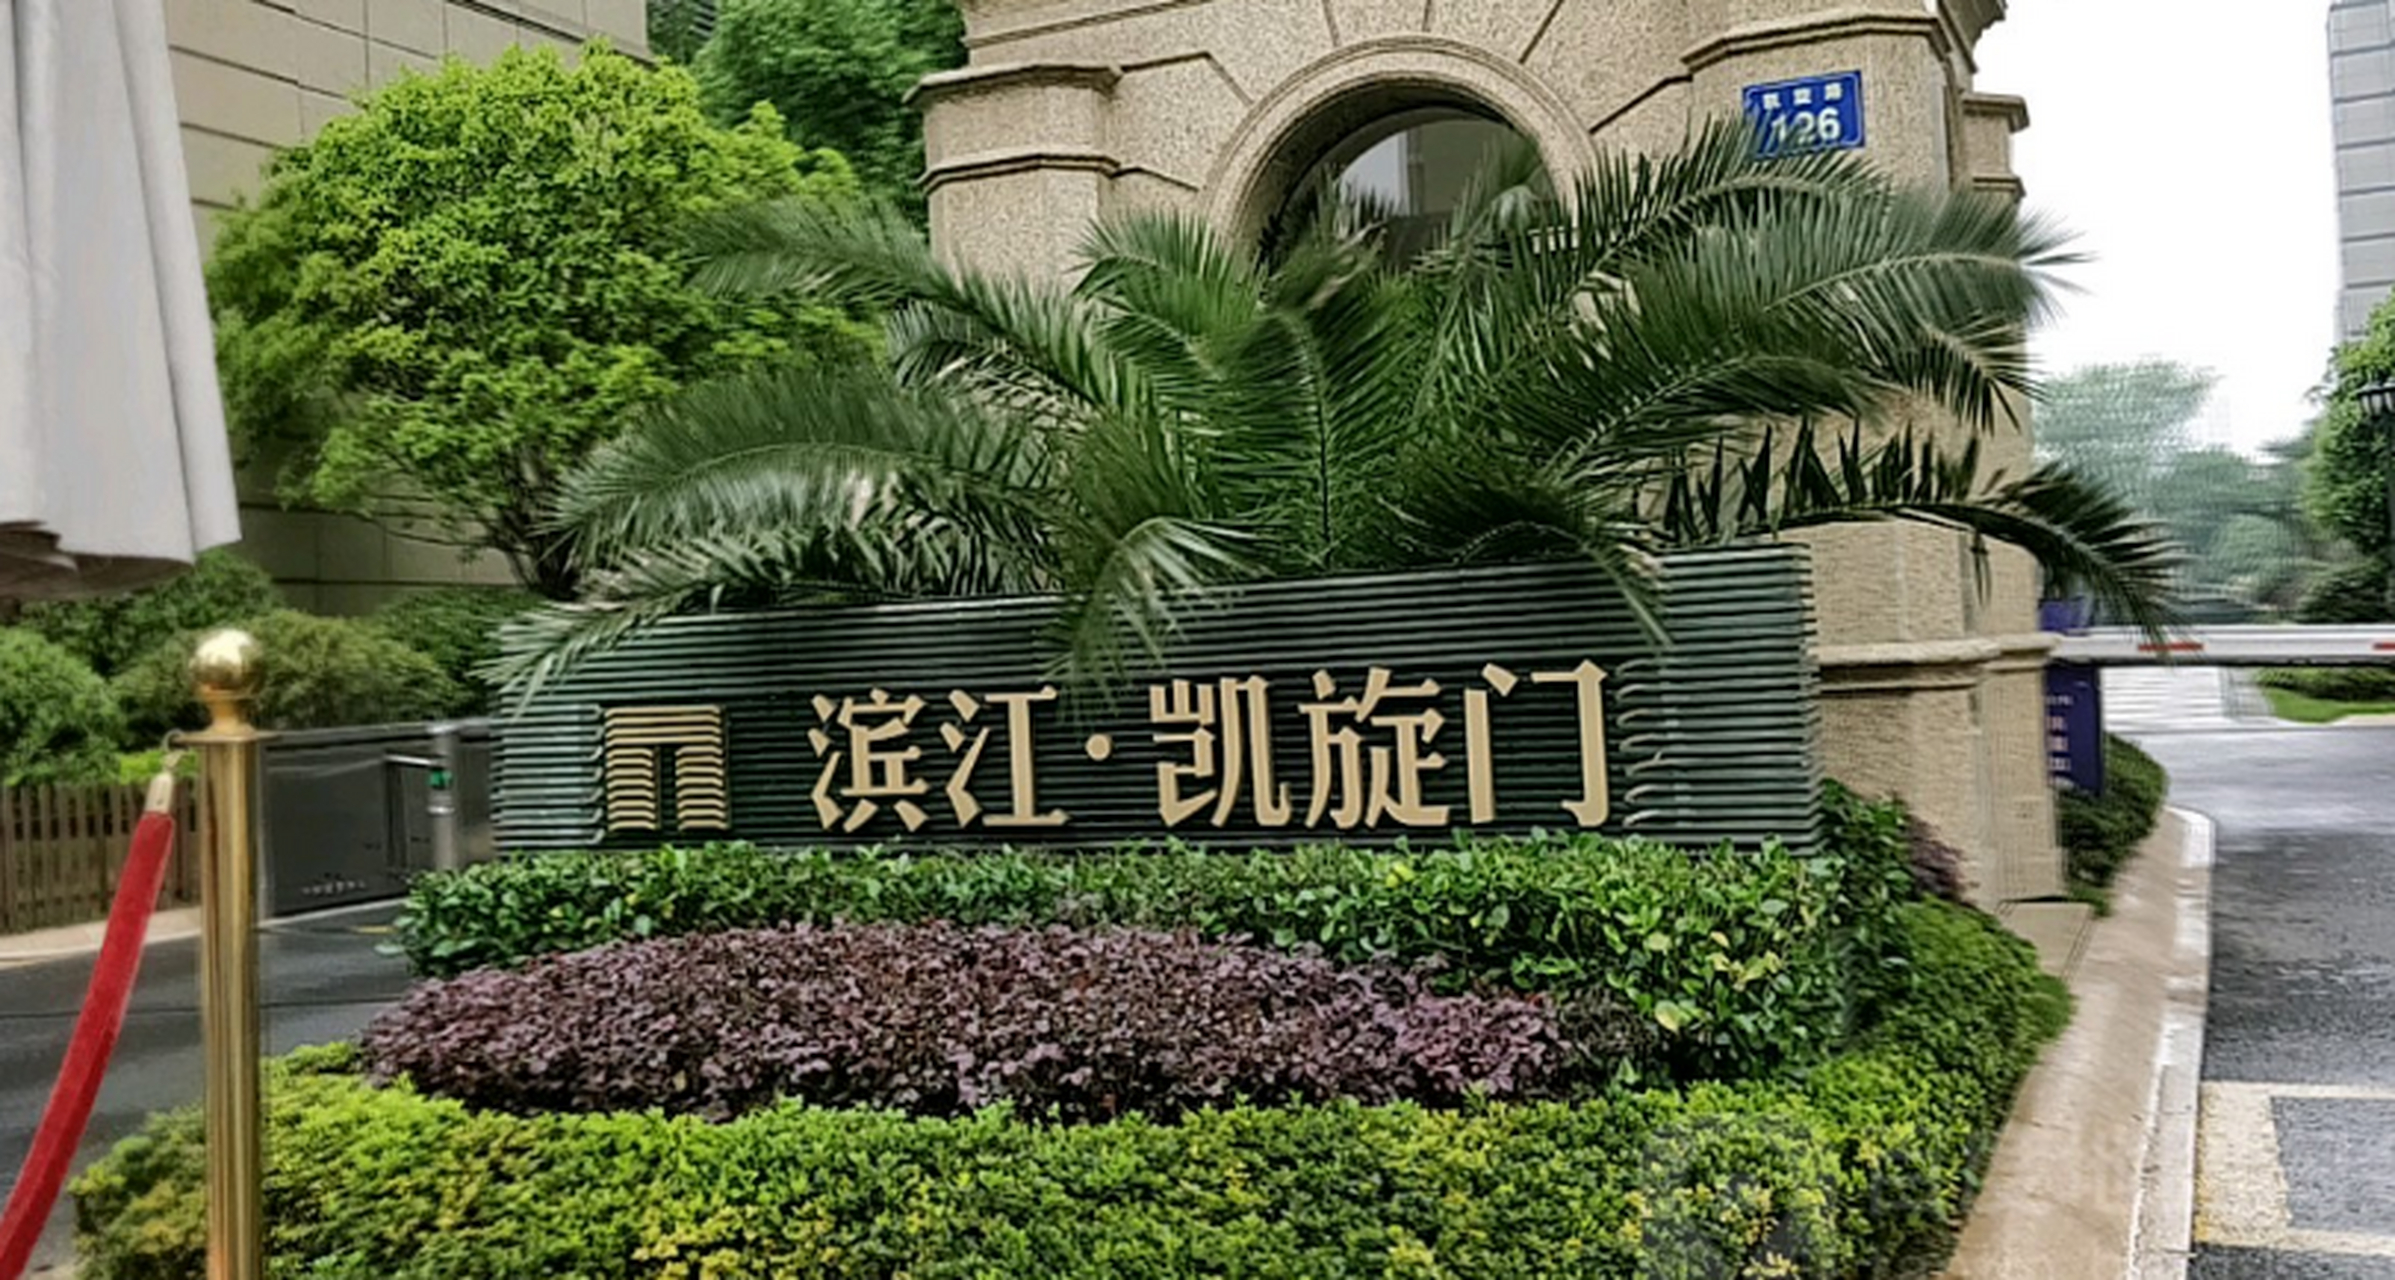 上海滨江凯旋门小区图片